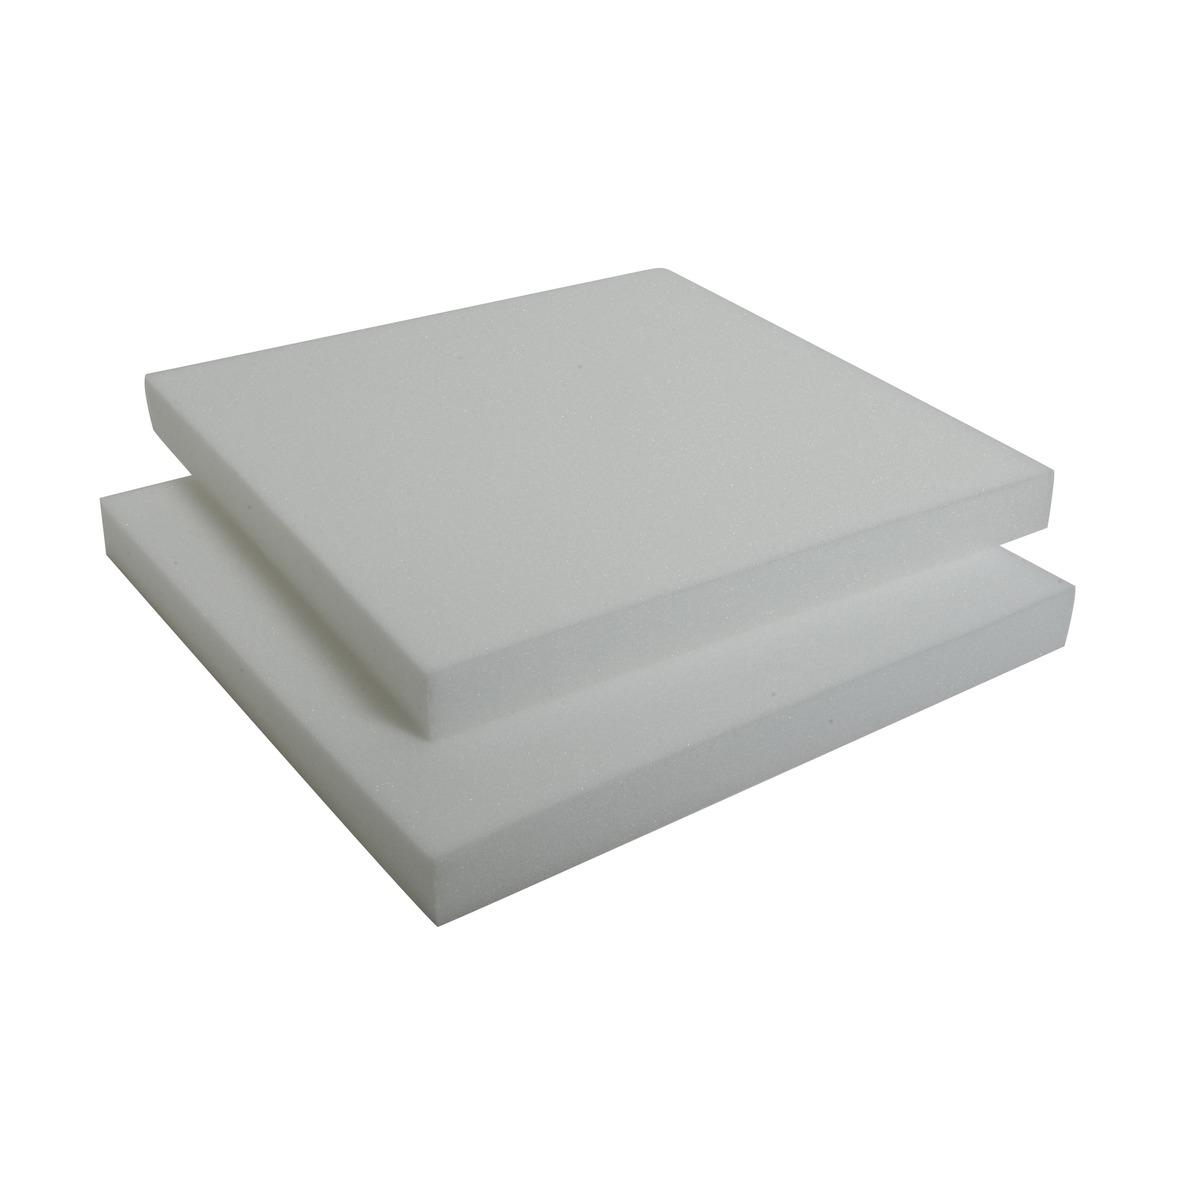 Les 2 galettes carrés pour confection - Mousse polyester - 38 x 38 x 4 cm - Blanc